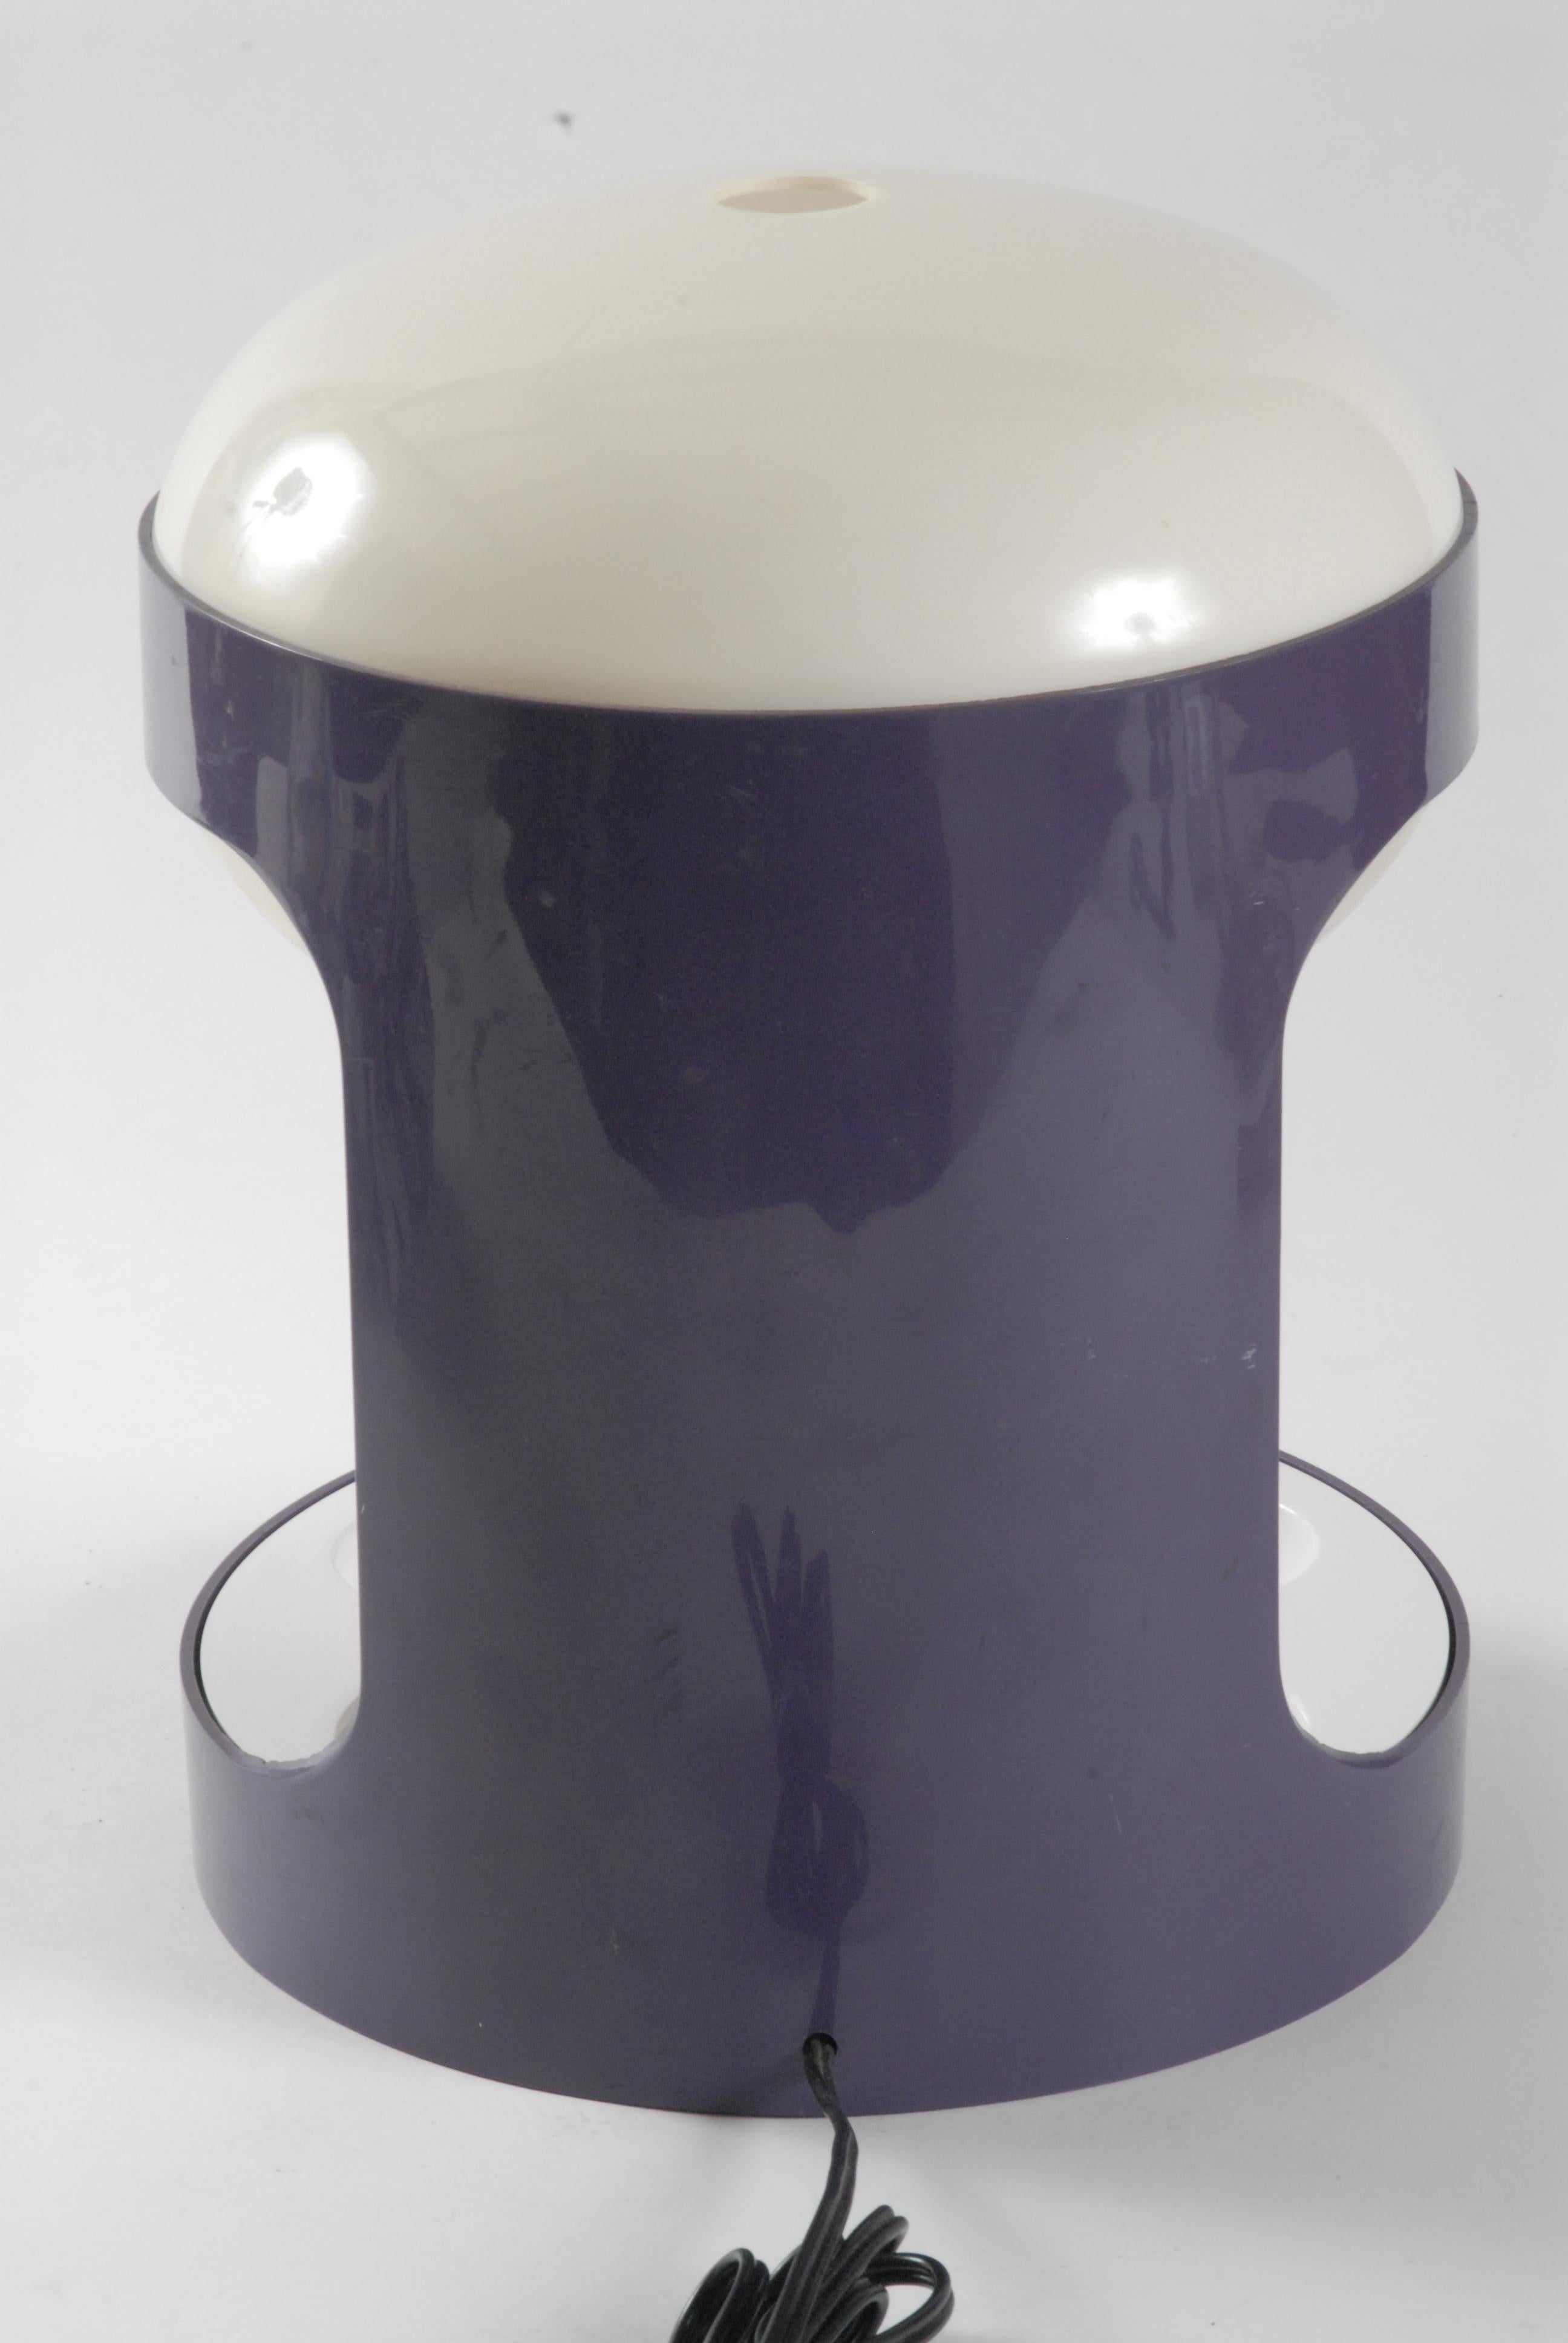 purple desk lamp